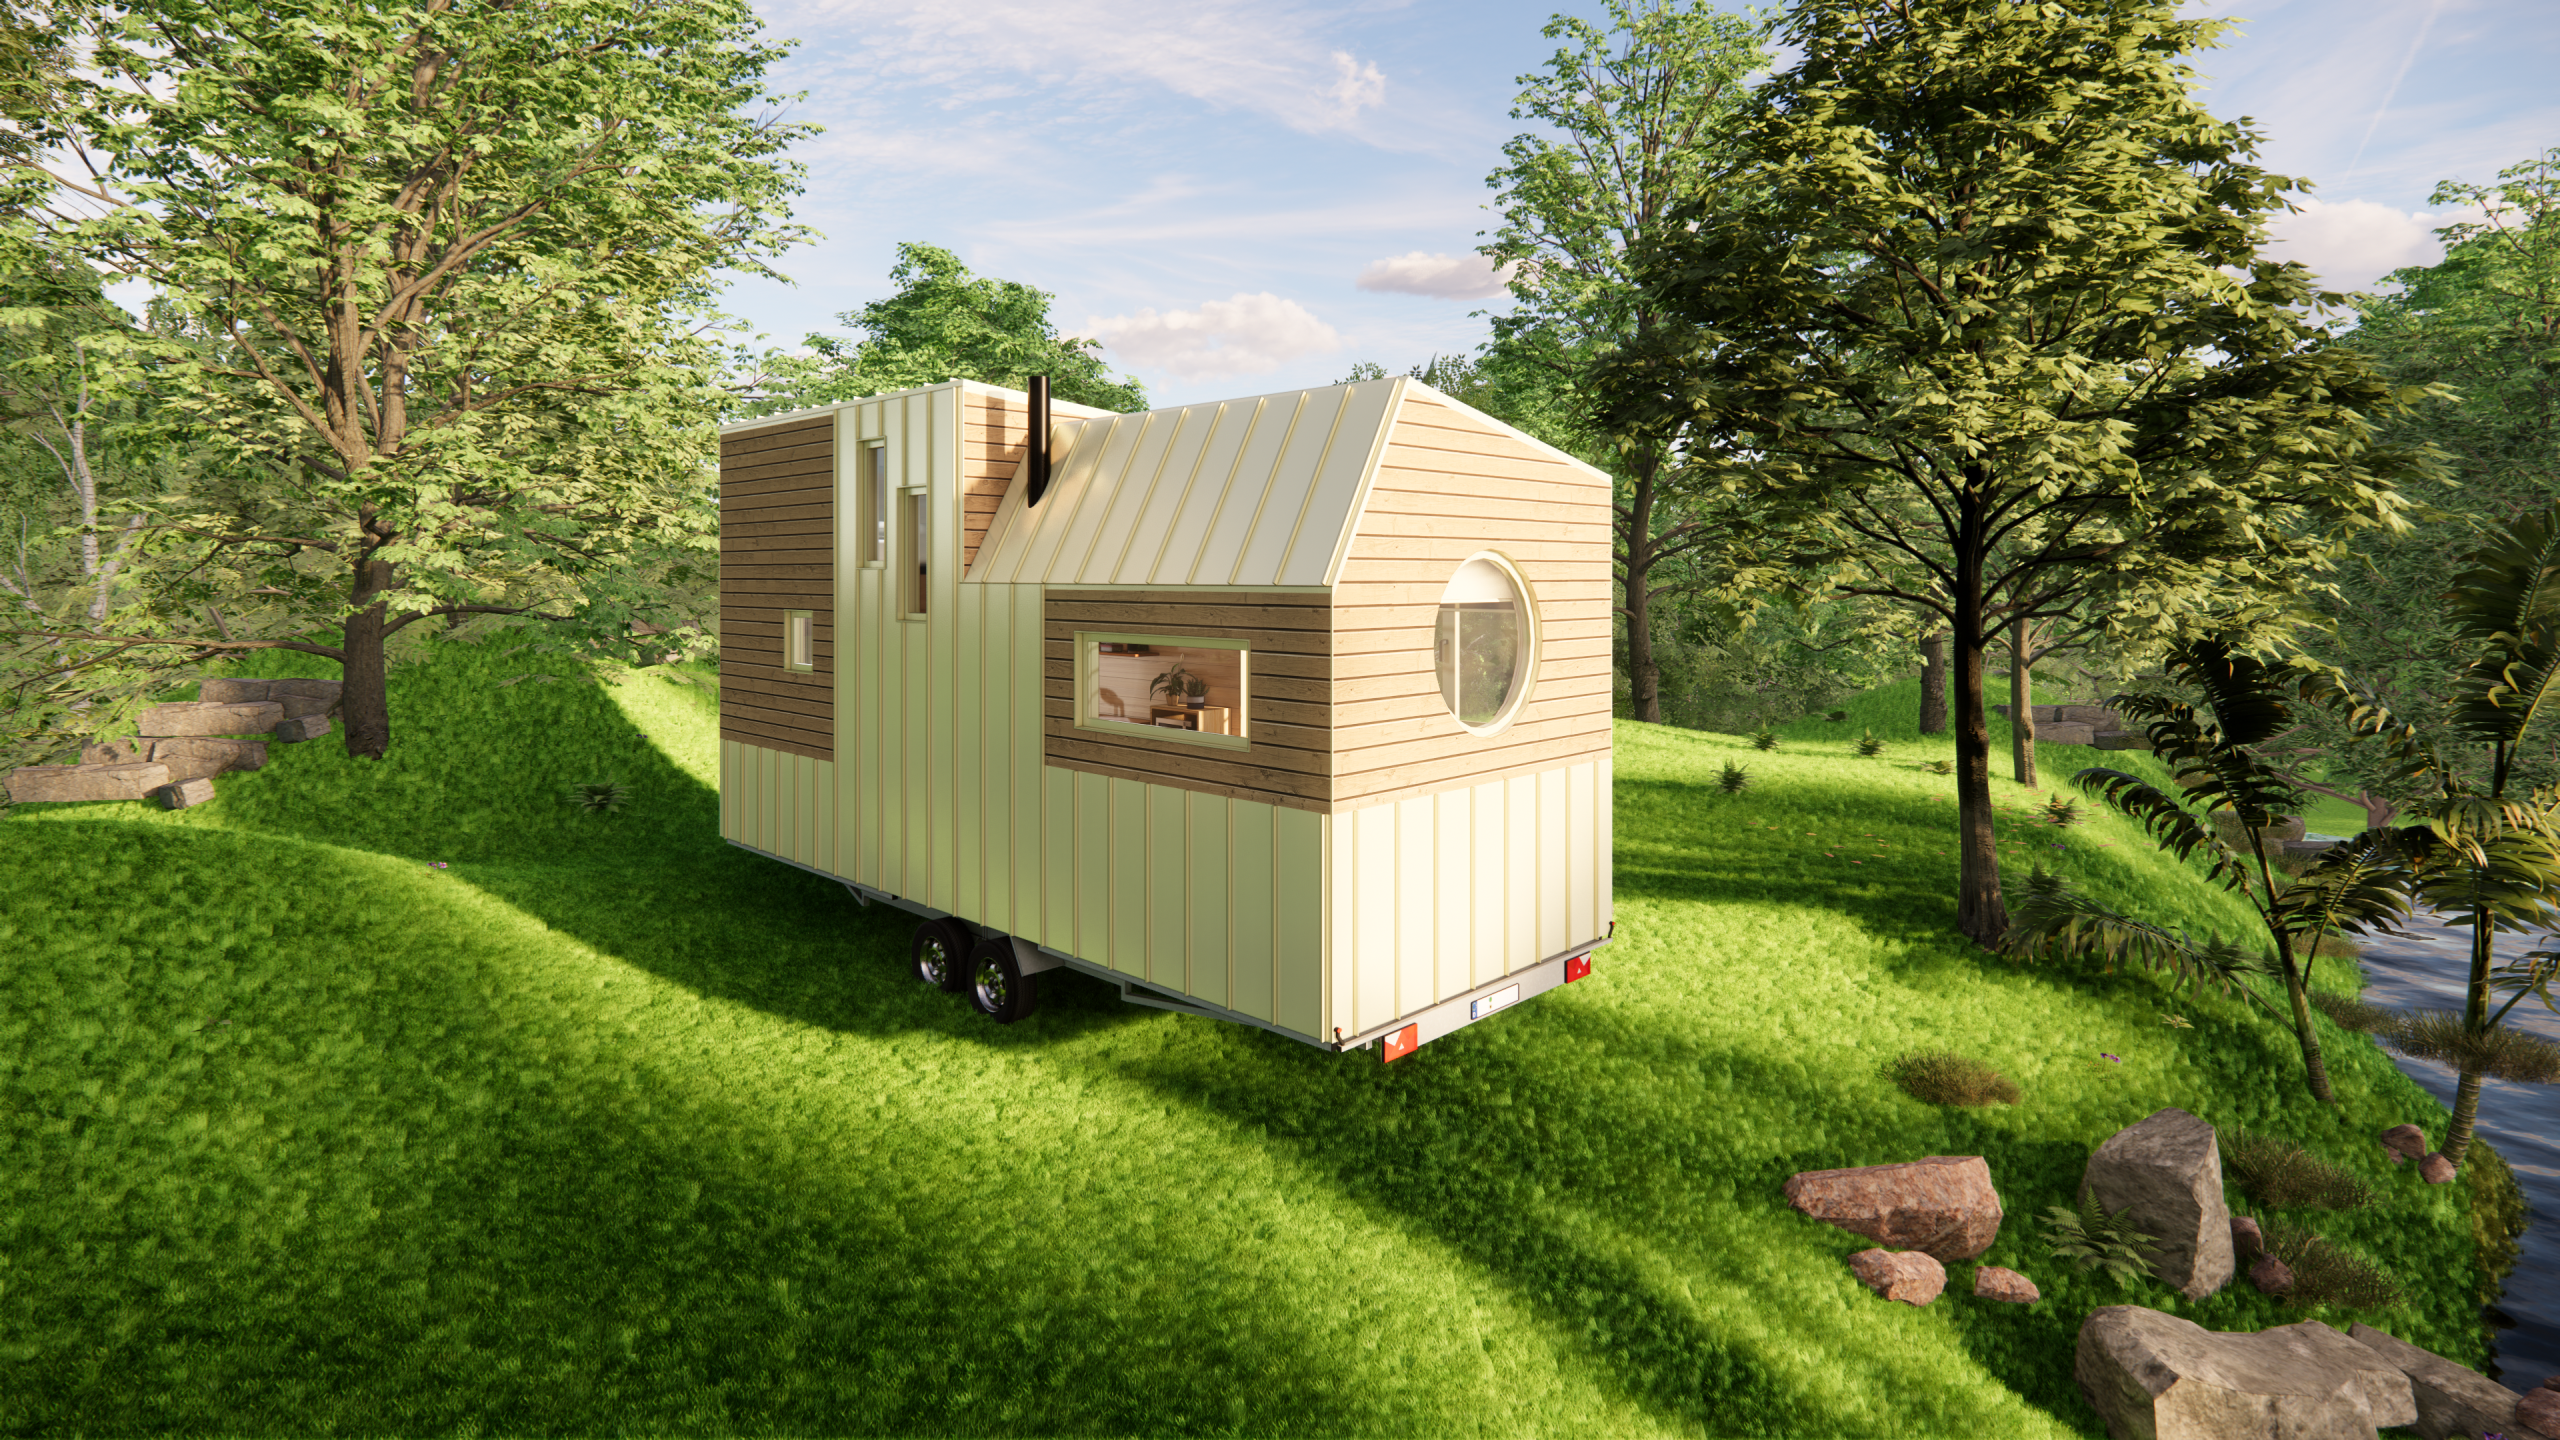 rendu 3D de la tiny house la Paulette : vue extérieure dans un environnement naturel